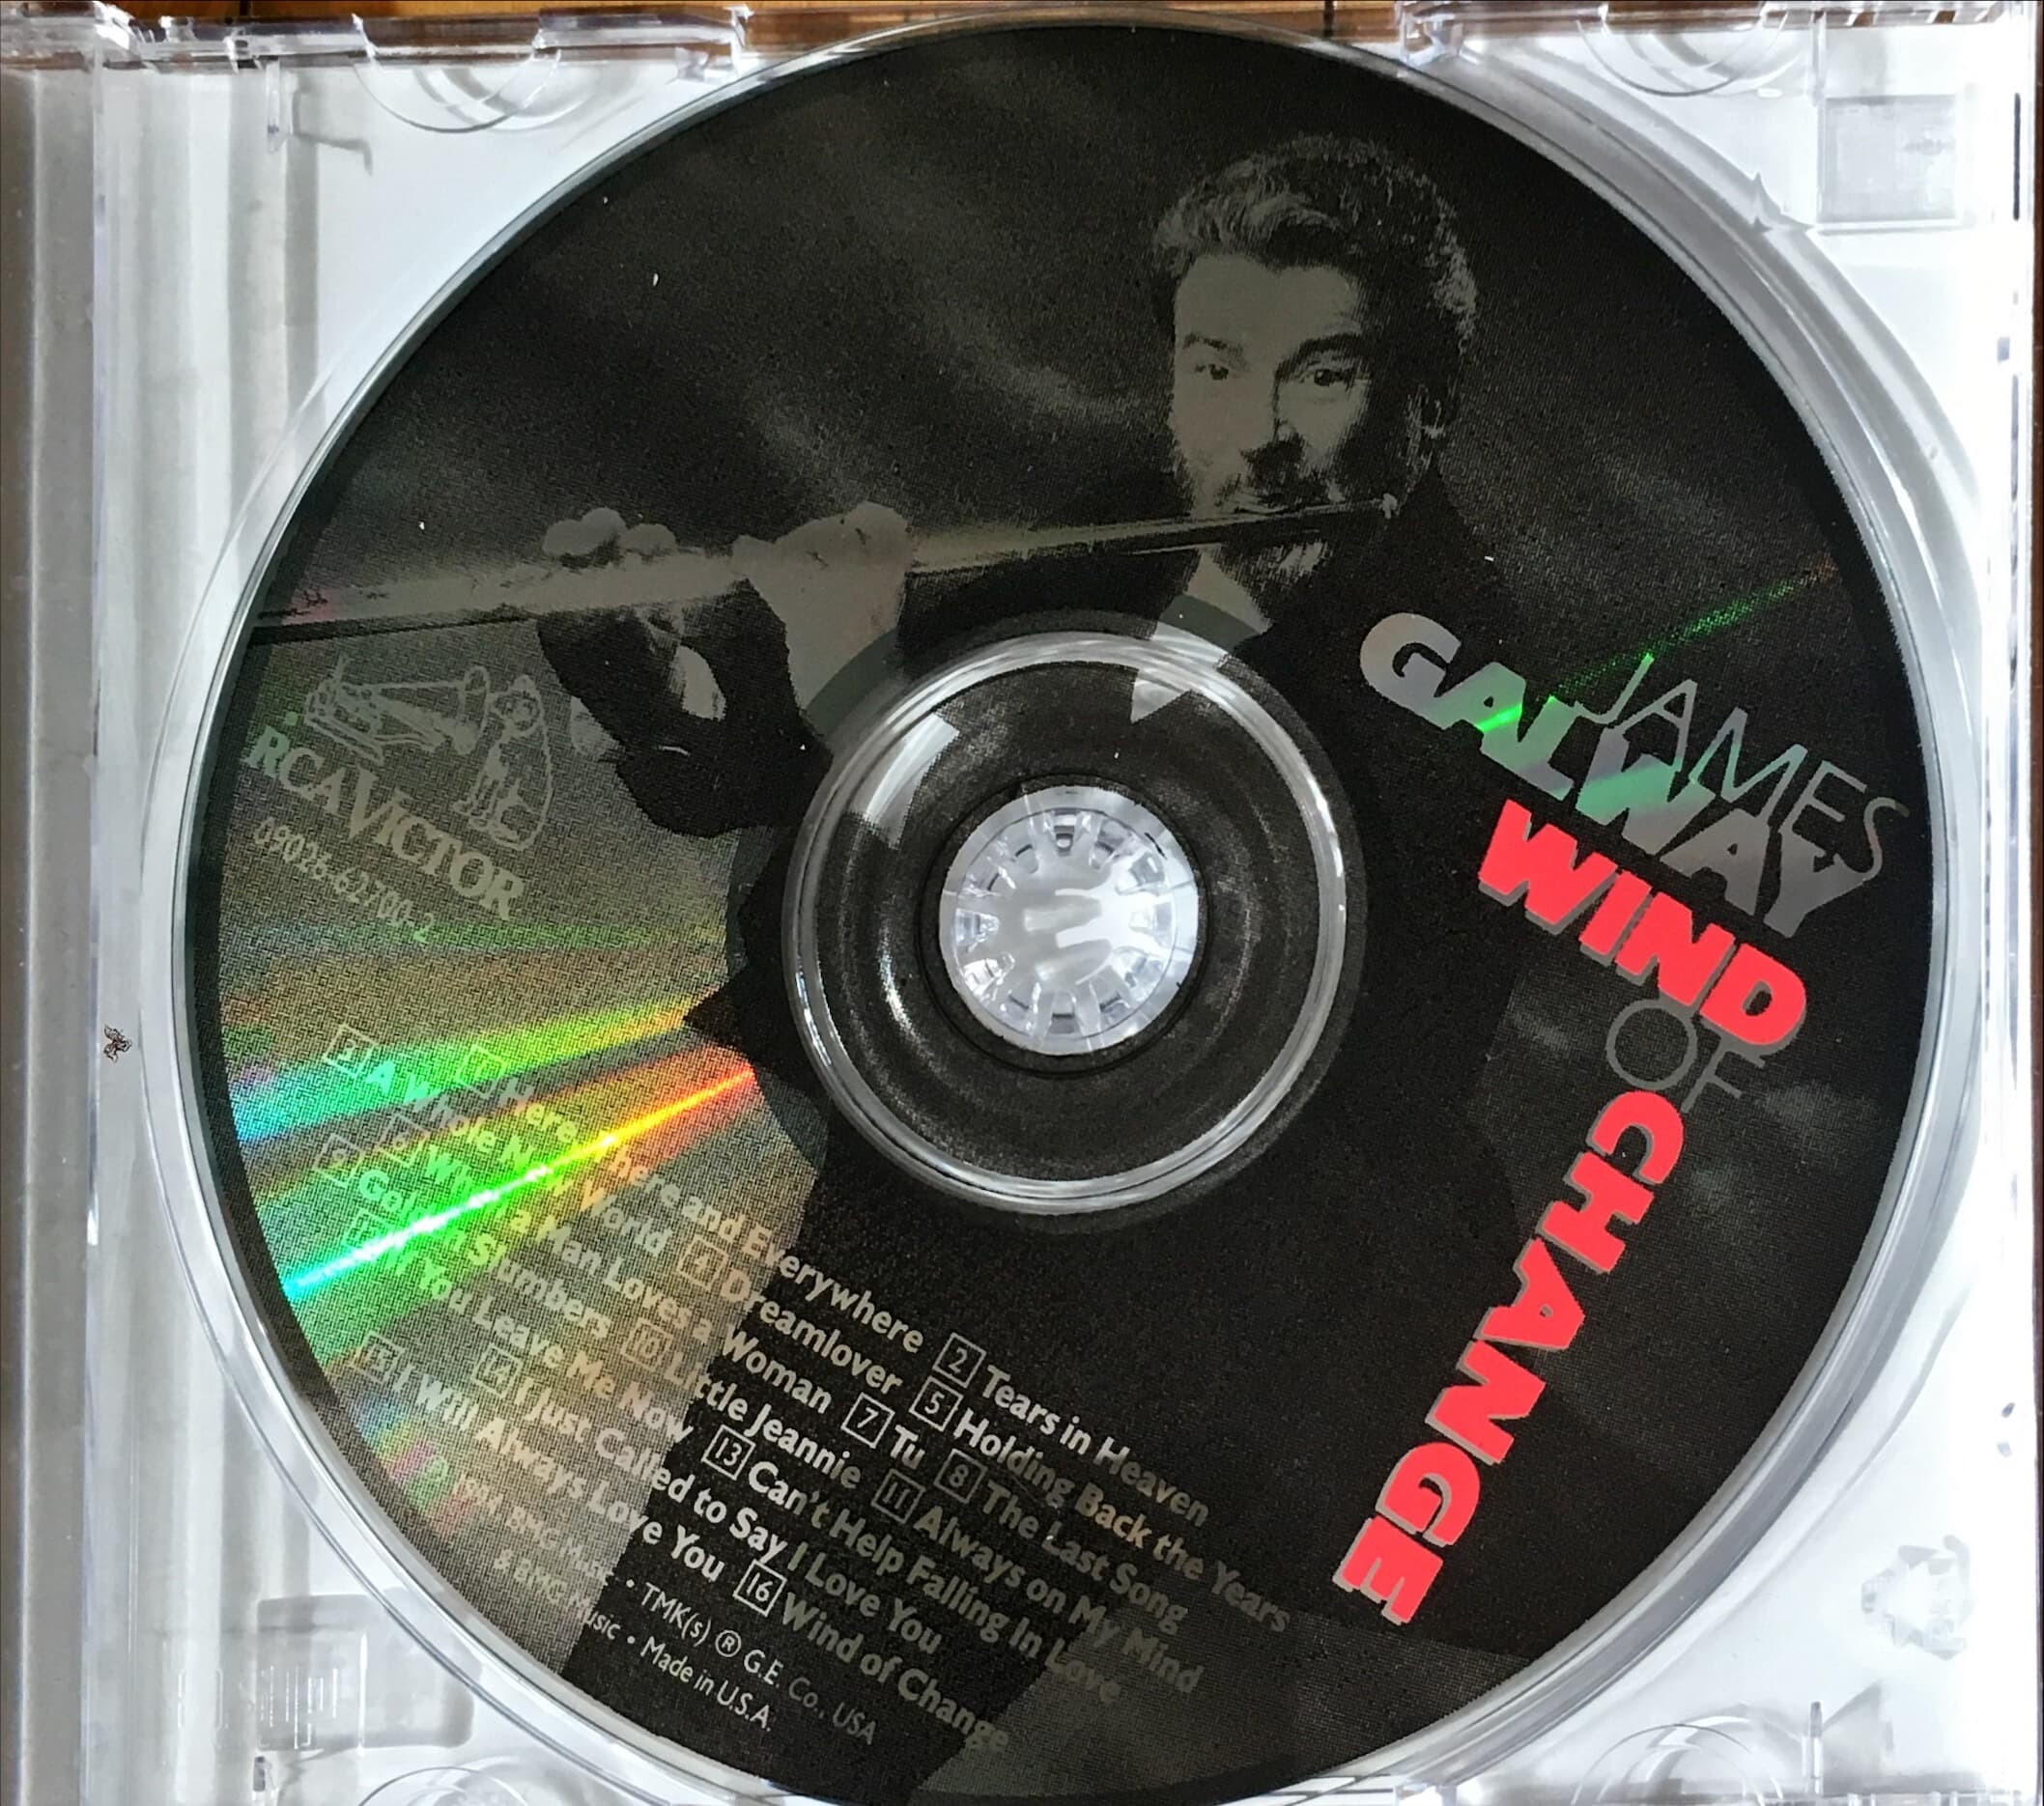 제임스 골웨이 - 윈드 오브 체인지 (James Galway - Wind of Change) (CD-R) - James Galway